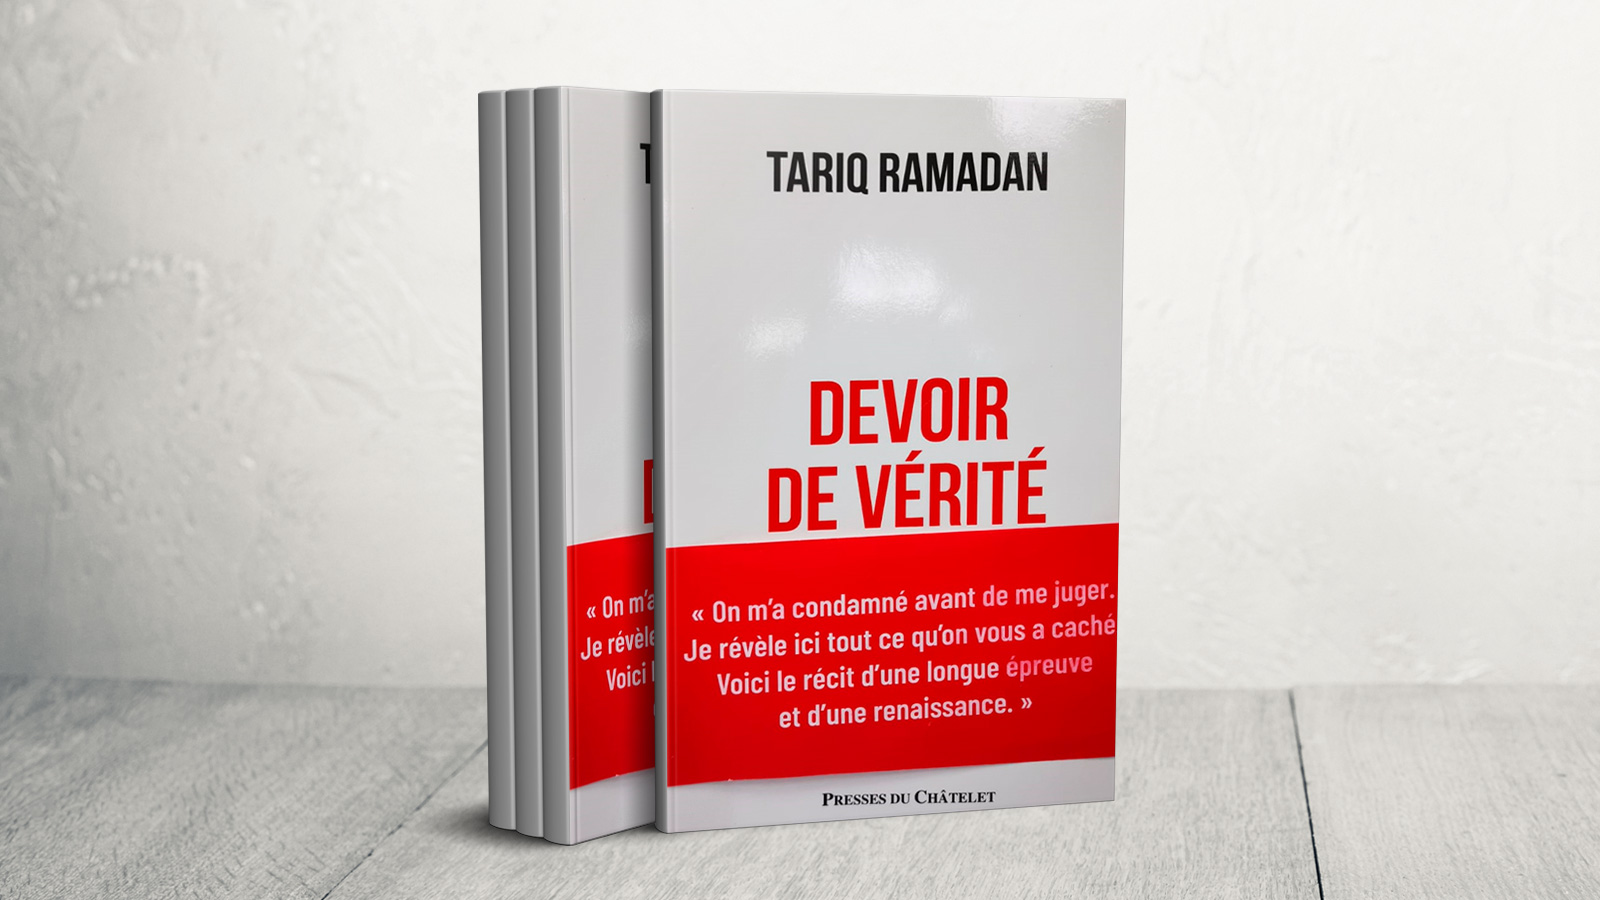 طارق رمضان قال إنهم أدانوه قبل محاكمته وأوضح أن الكتاب يكشف كل ما أخفوه عن الناس (الجزيرة)